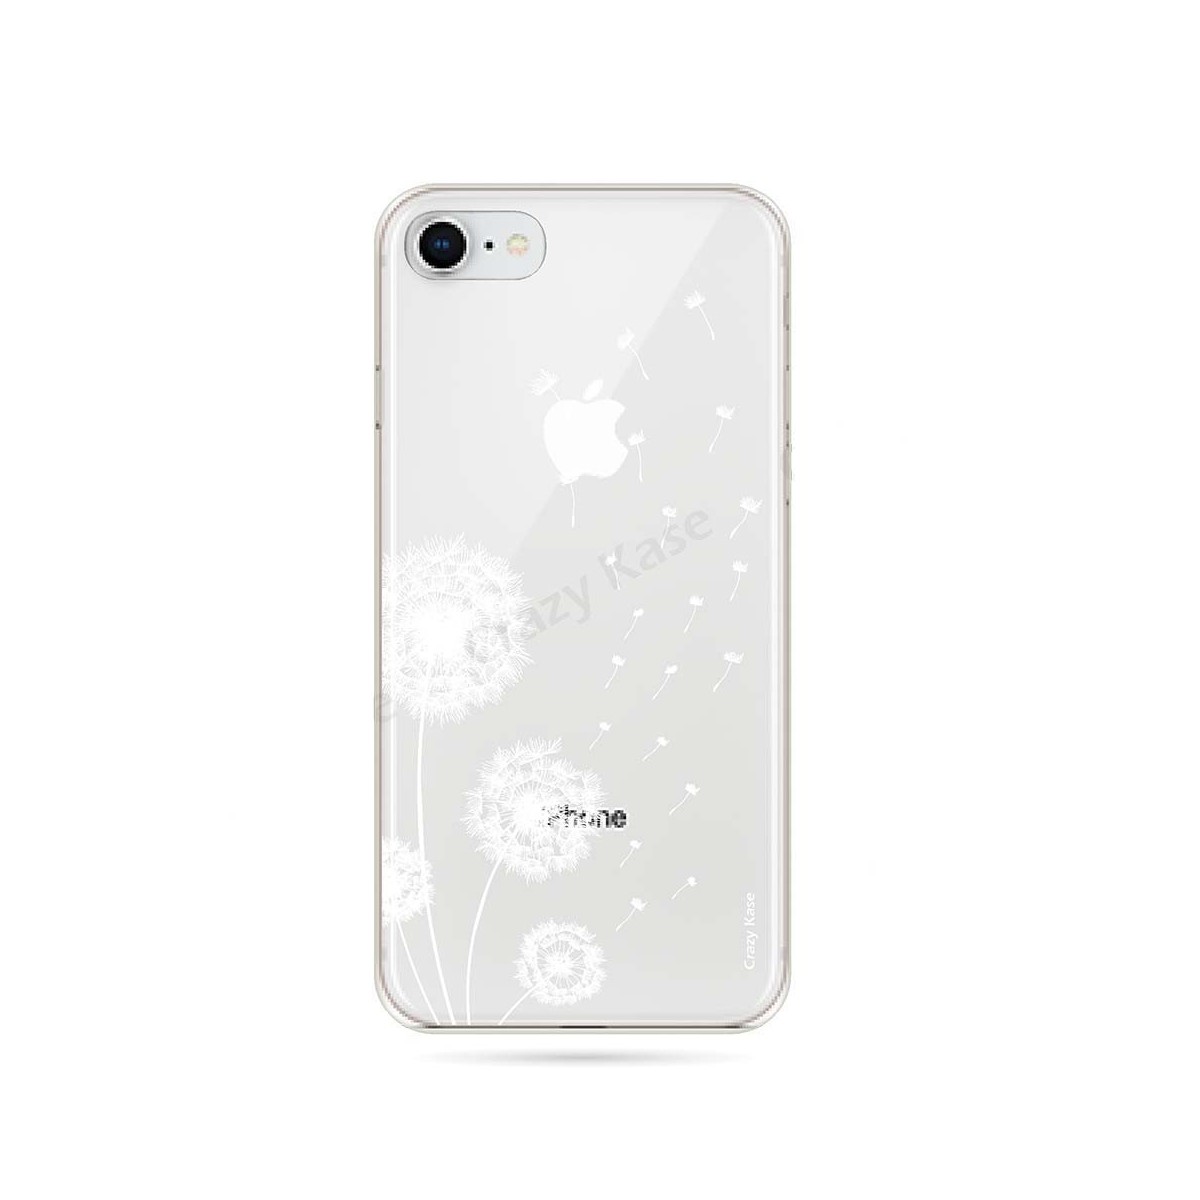 Coque iPhone 8 souple Fleurs de pissenlit - Crazy Kase